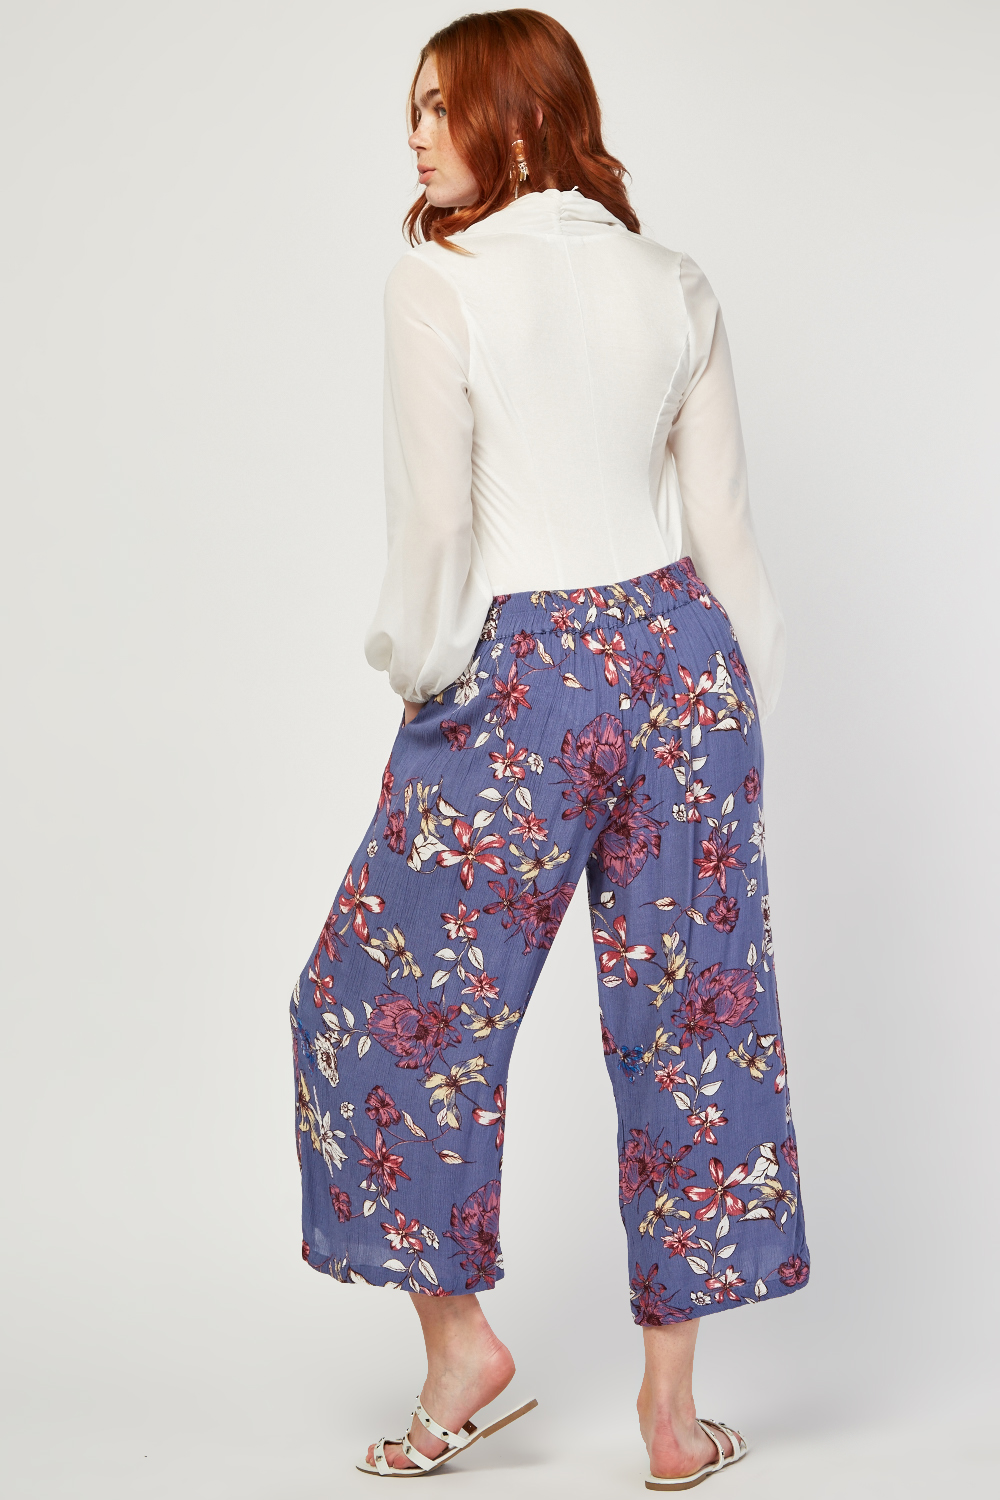 Vintage Flower Print Crop Trousers - Just $6